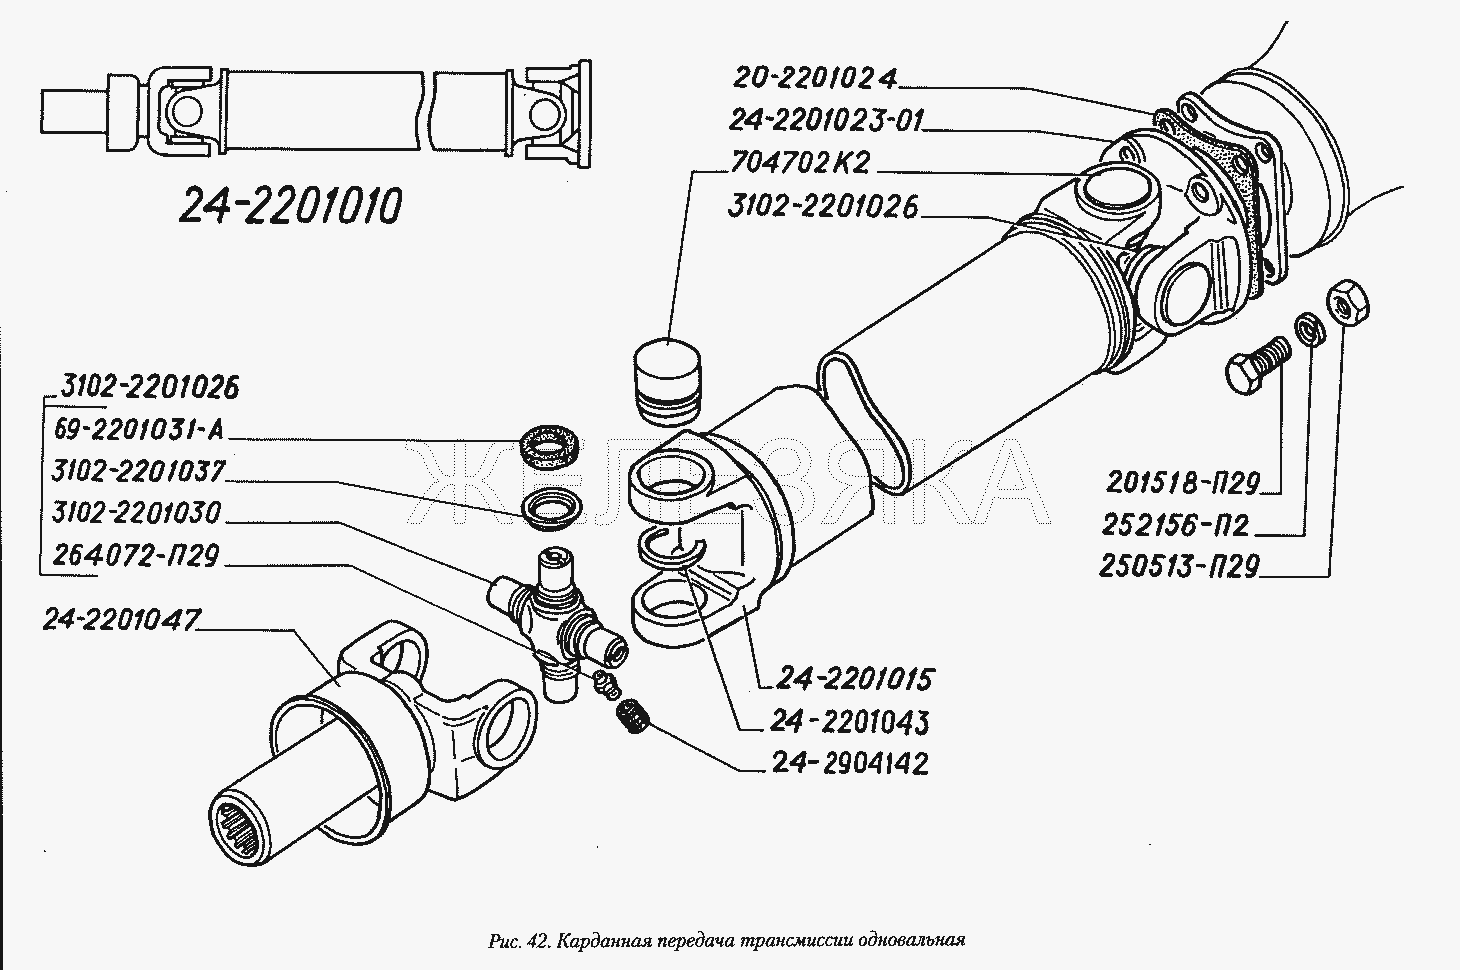 Карданная передача трансмиссии одновальная.  ГАЗ-3110